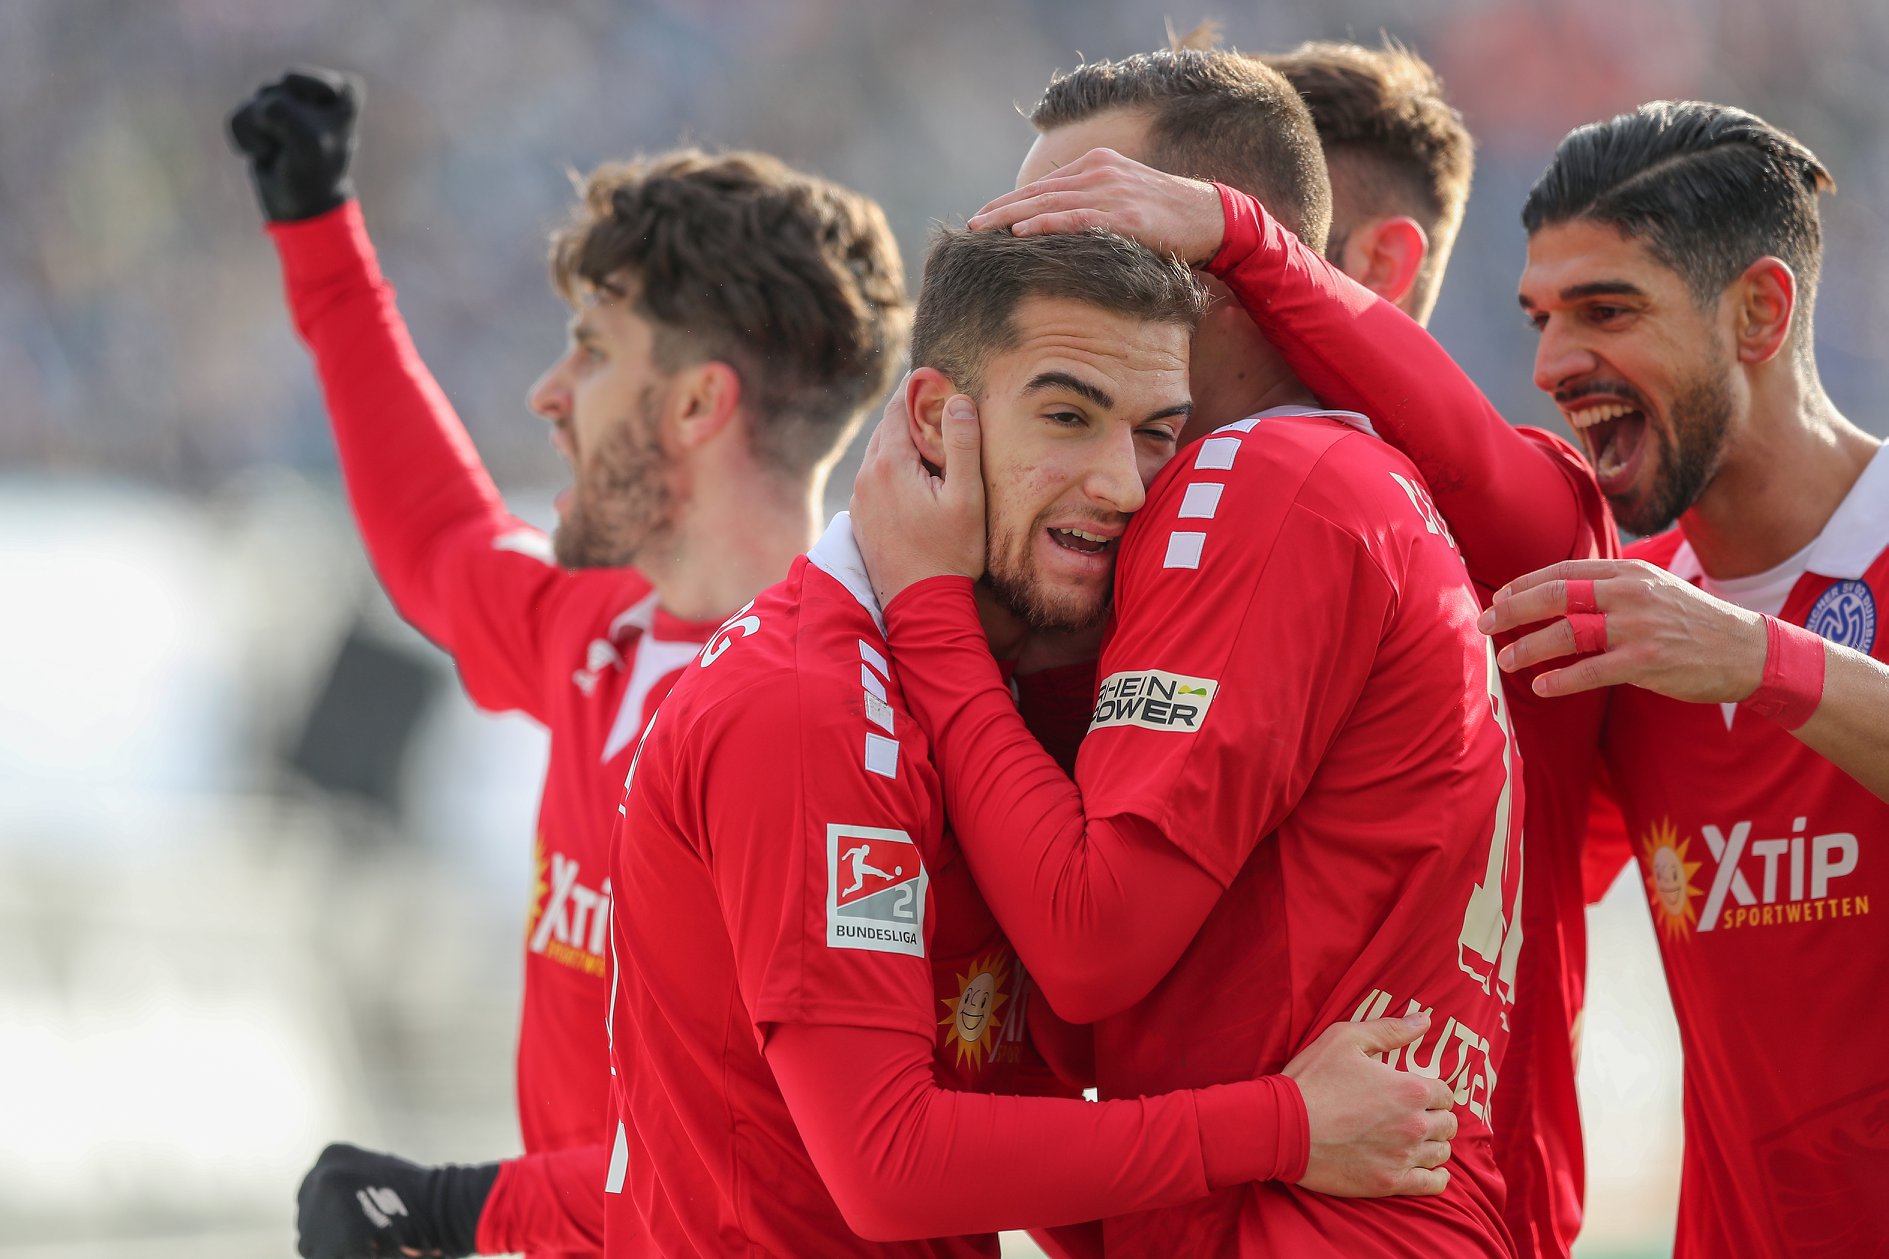 2. Bundesliga, St. Pauli-Duisburg 29 marzo: obiettivi diversi in questo match